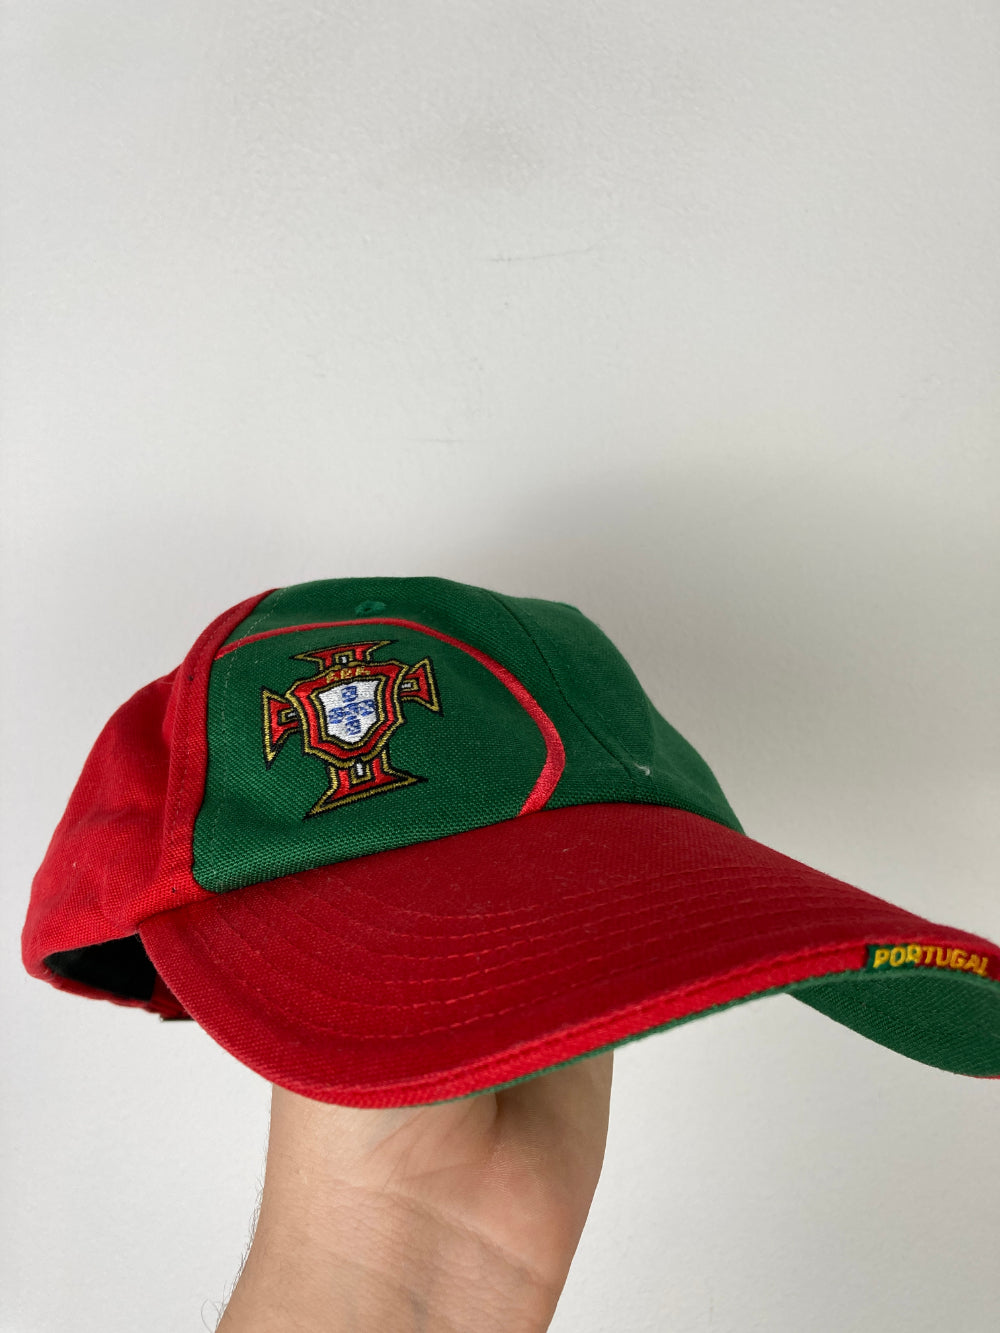 
                  
                    Original Portugal Cap 1990s
                  
                